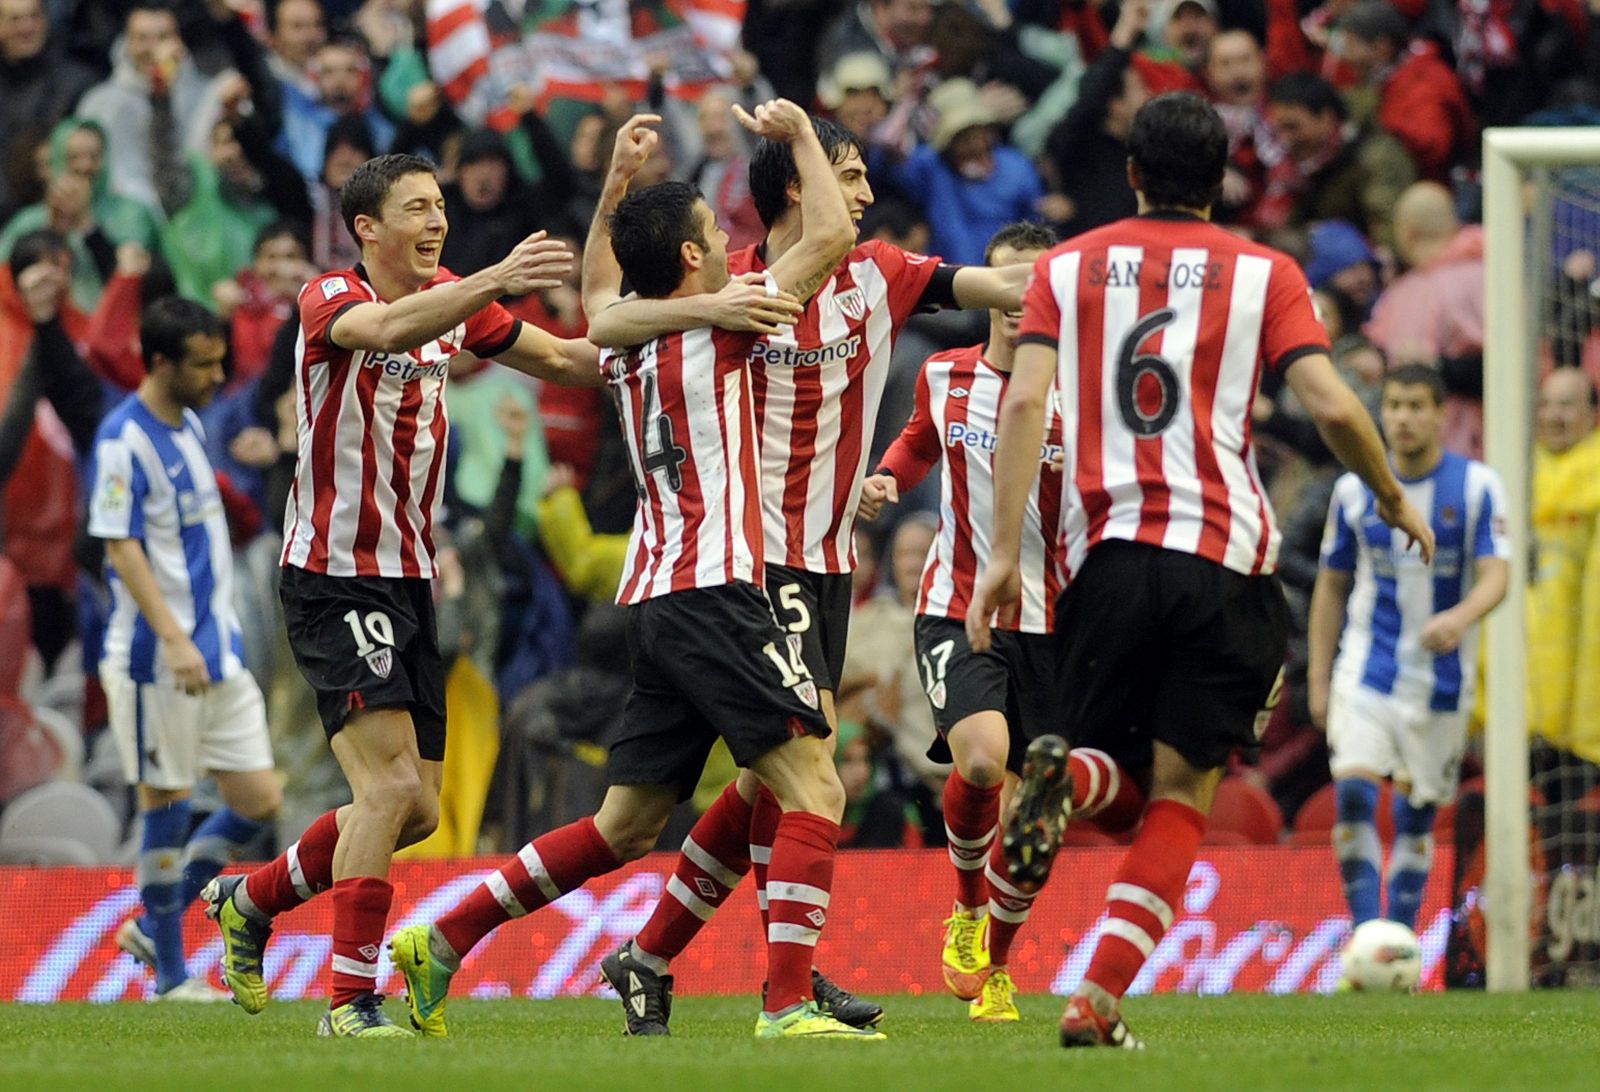 El Athletic Bilbao celebra un gol frente a la Real Sociedad en el derbi vasco.